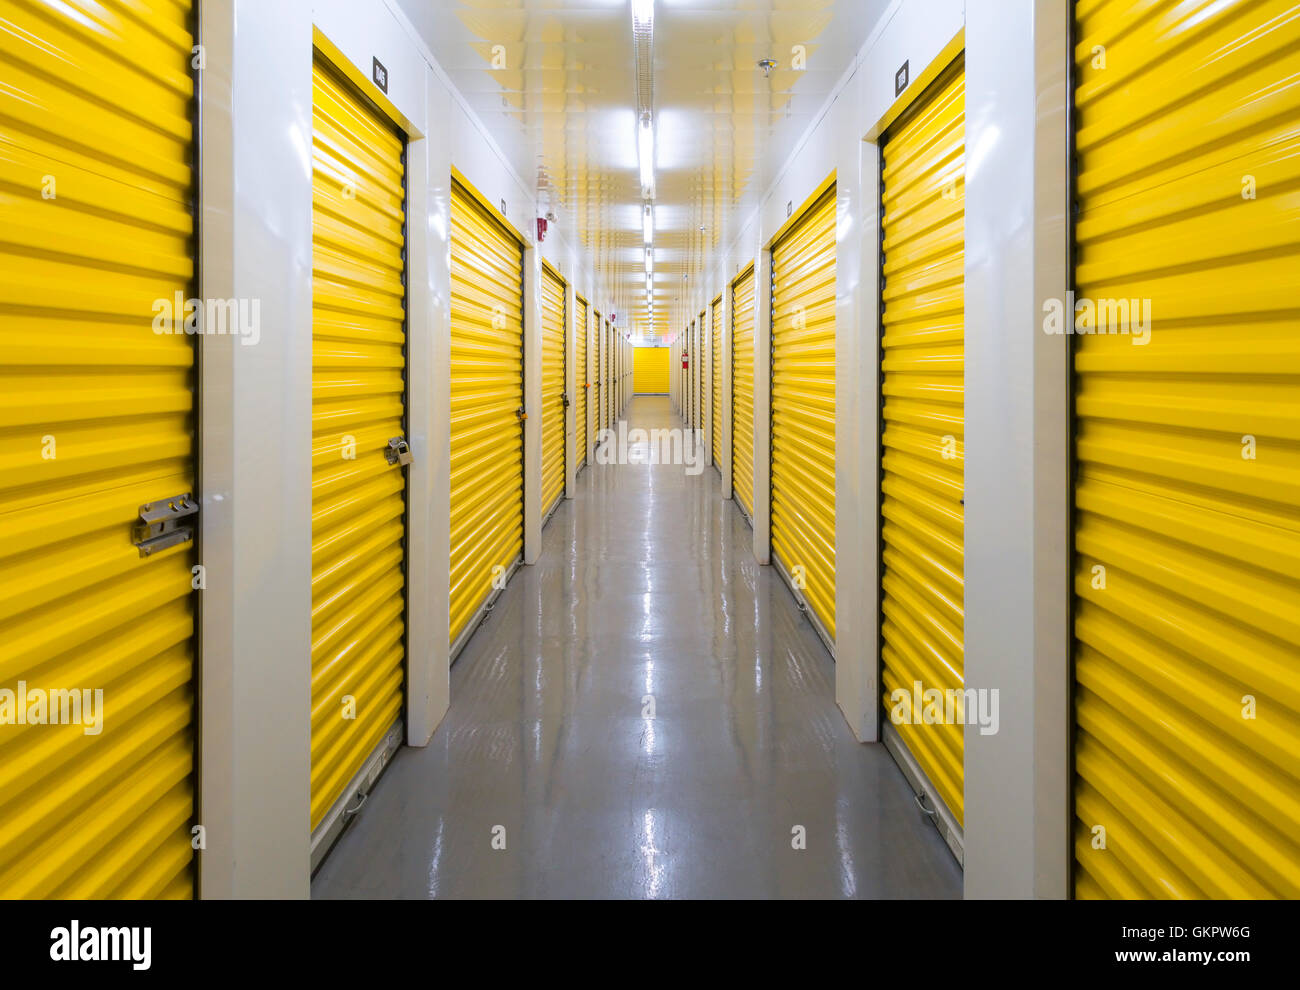 Ein langer Flur mit vielen Lagereinheiten in einem Self-Storage-Gebäude. Mississauga, Ontario, Kanada. Stockfoto